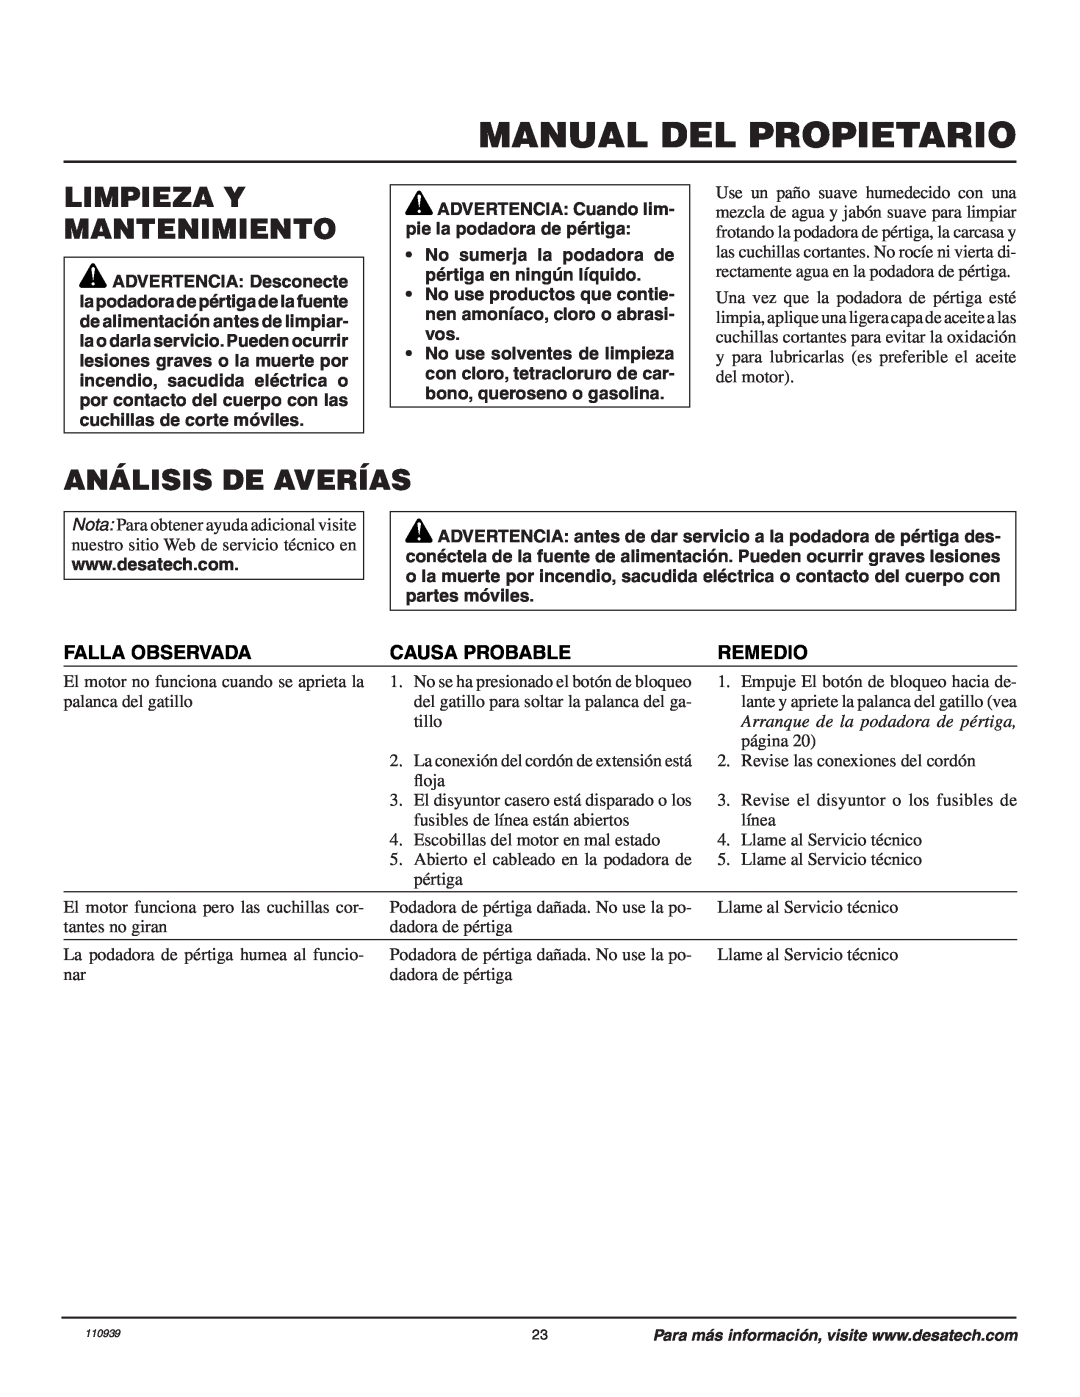 Remington 110946-01A owner manual Limpieza Y Mantenimiento, Análisis De Averías, Falla Observada, Causa Probable, Remedio 